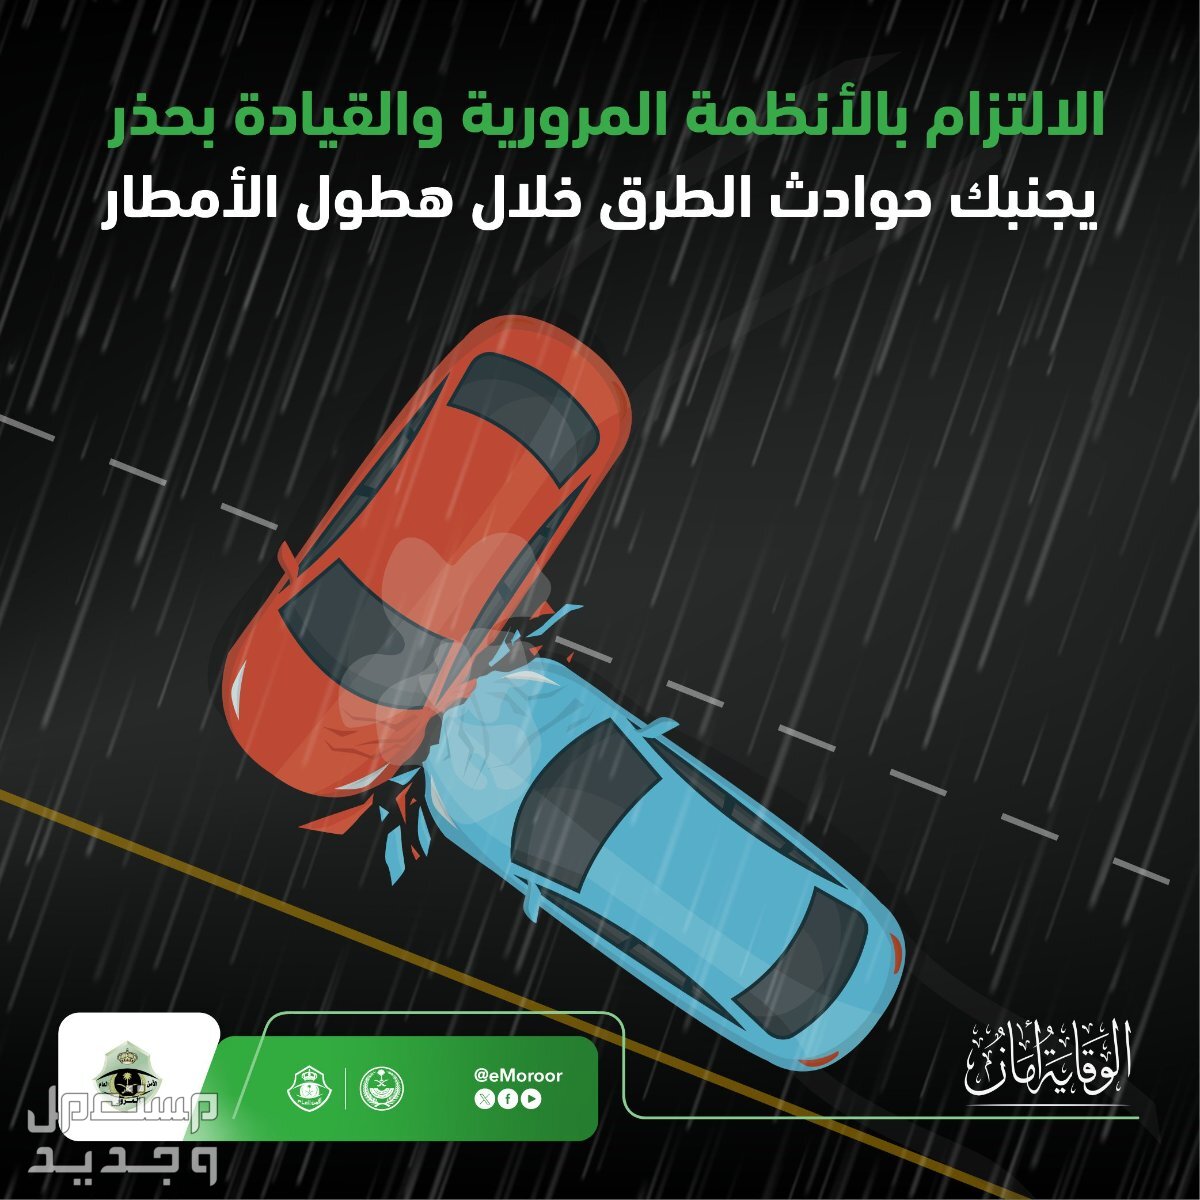 "المرور" يوضح قيمة مخالفة القيادة على الأرصفة والمسارات في عمان القيادة أثناء المطر